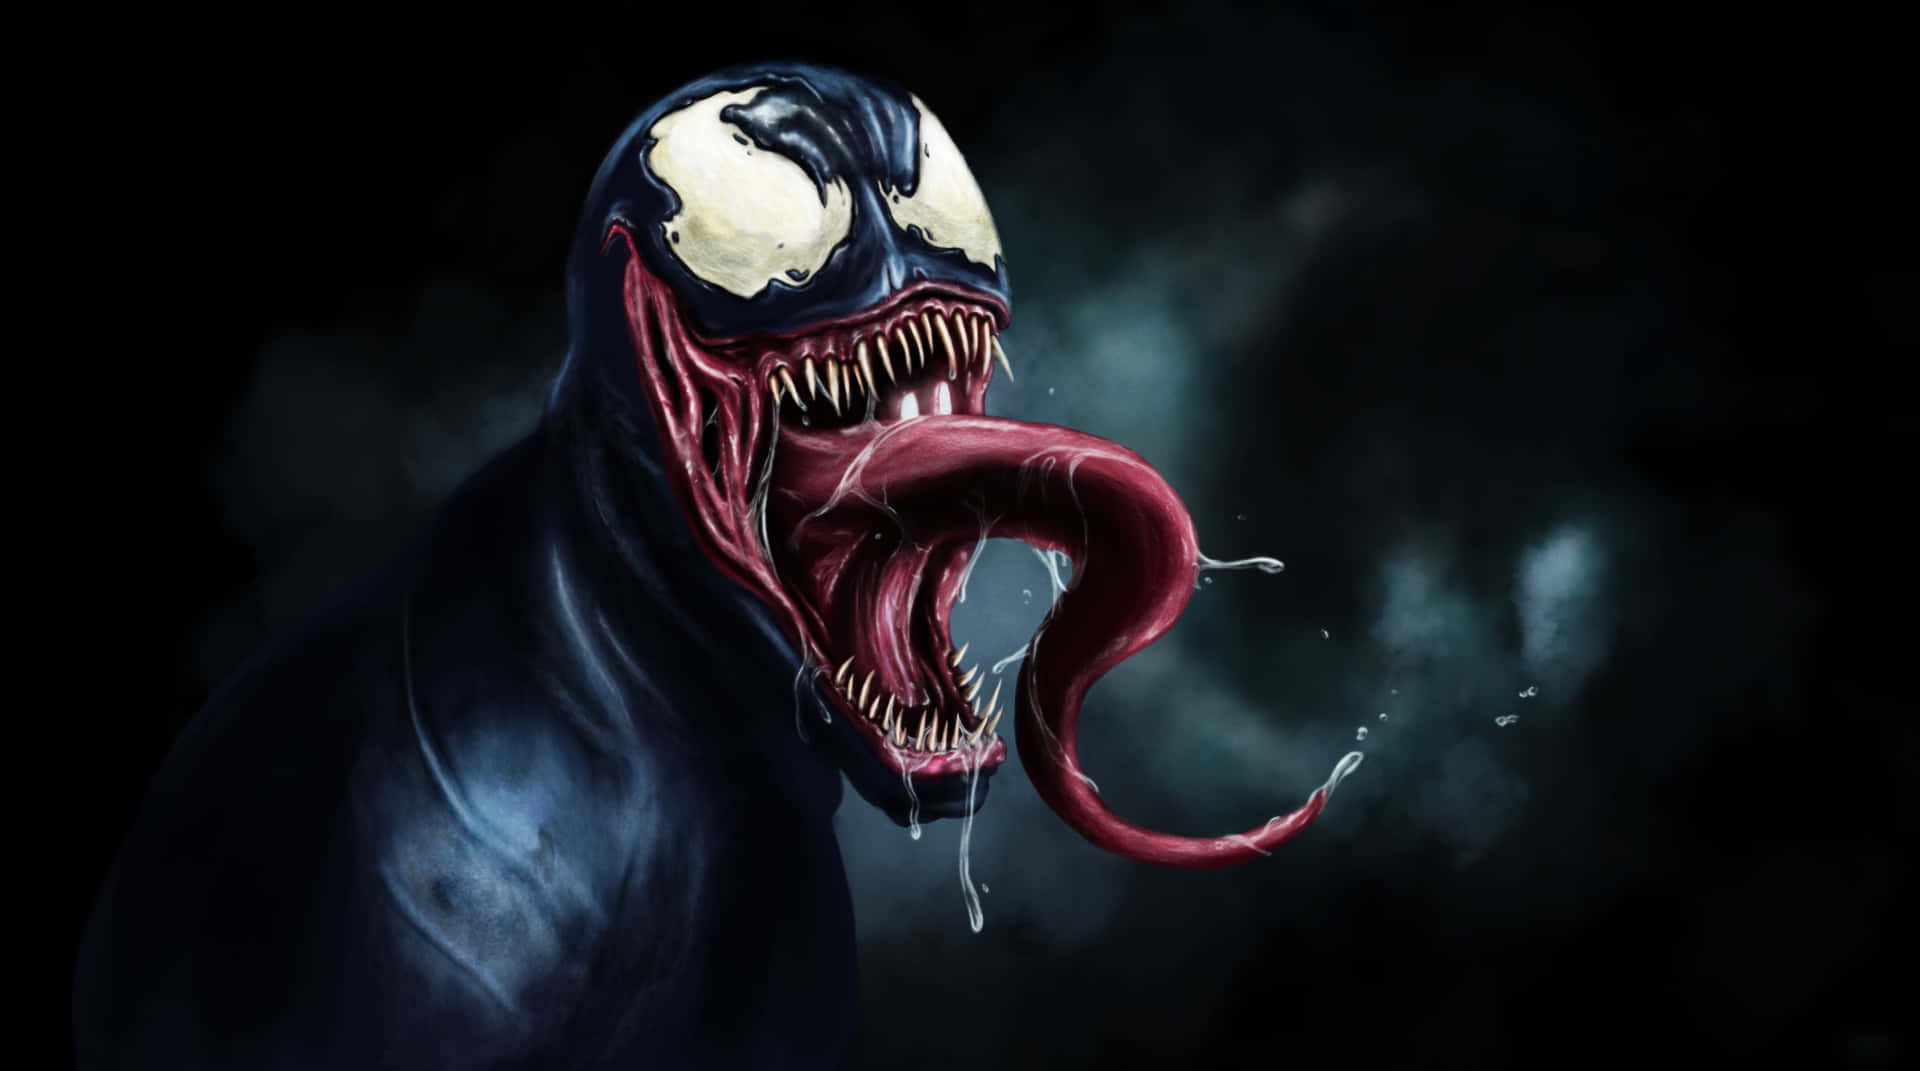 Tomhardy Levererar En Monstruös Prestation Som Venom!